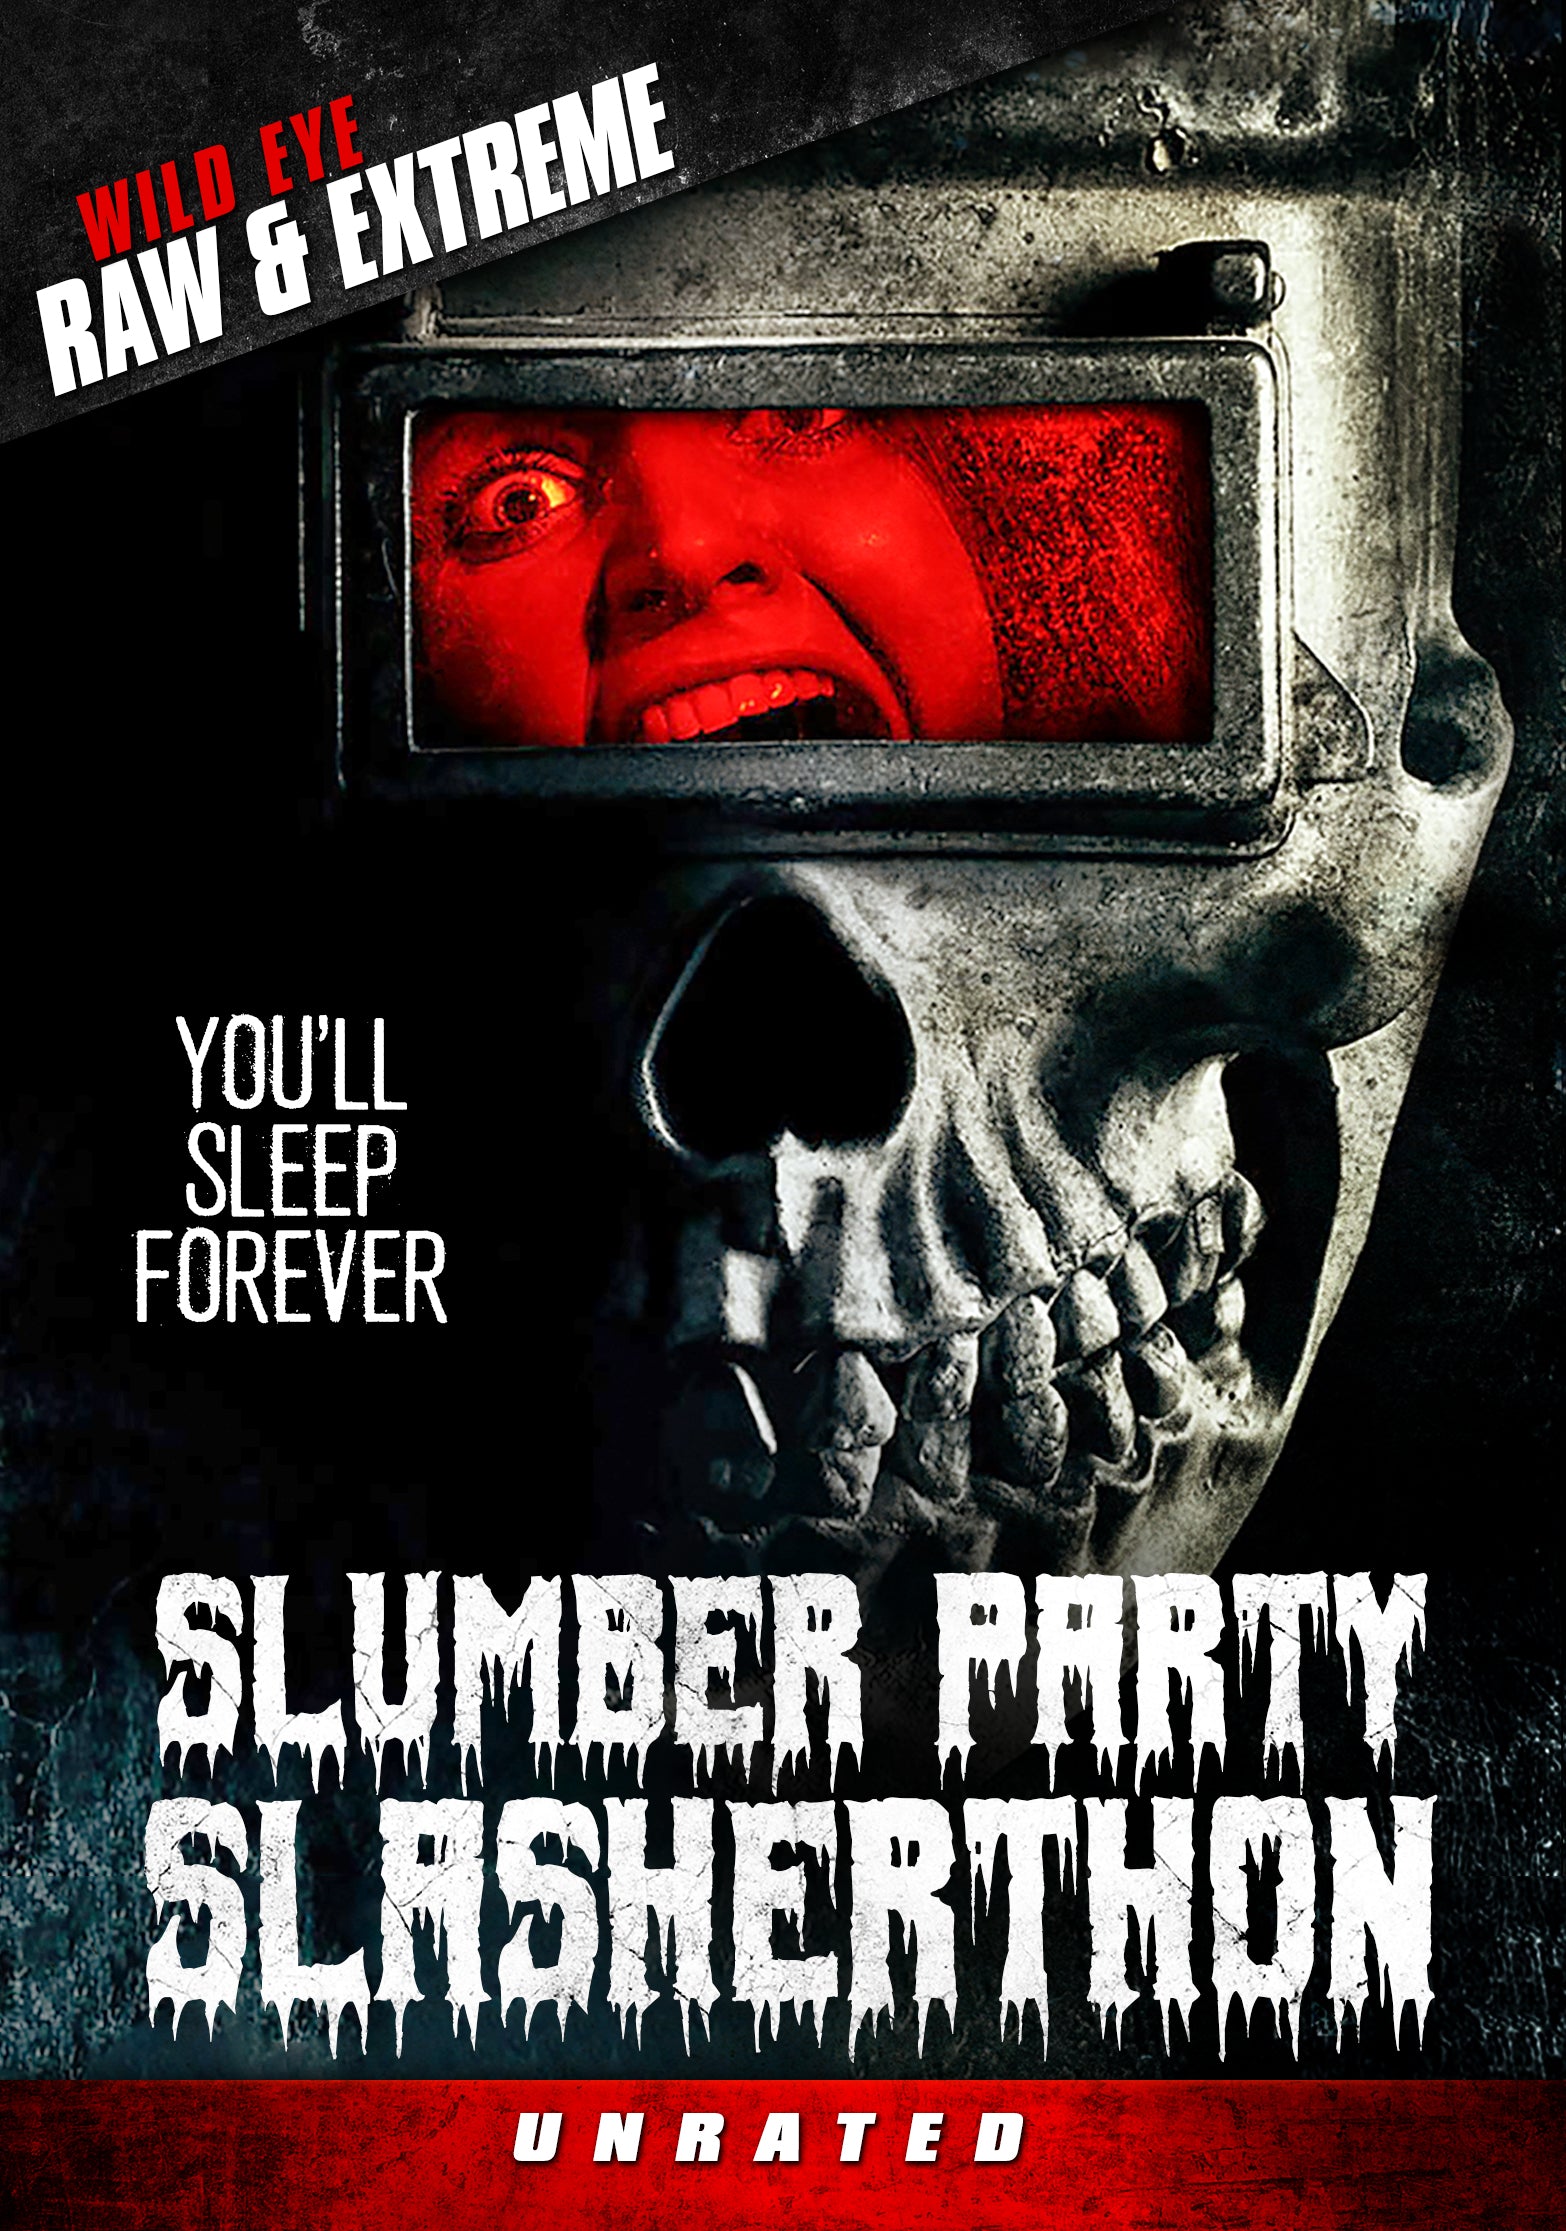 SLUMBER PARTY SLASHERTHON DVD